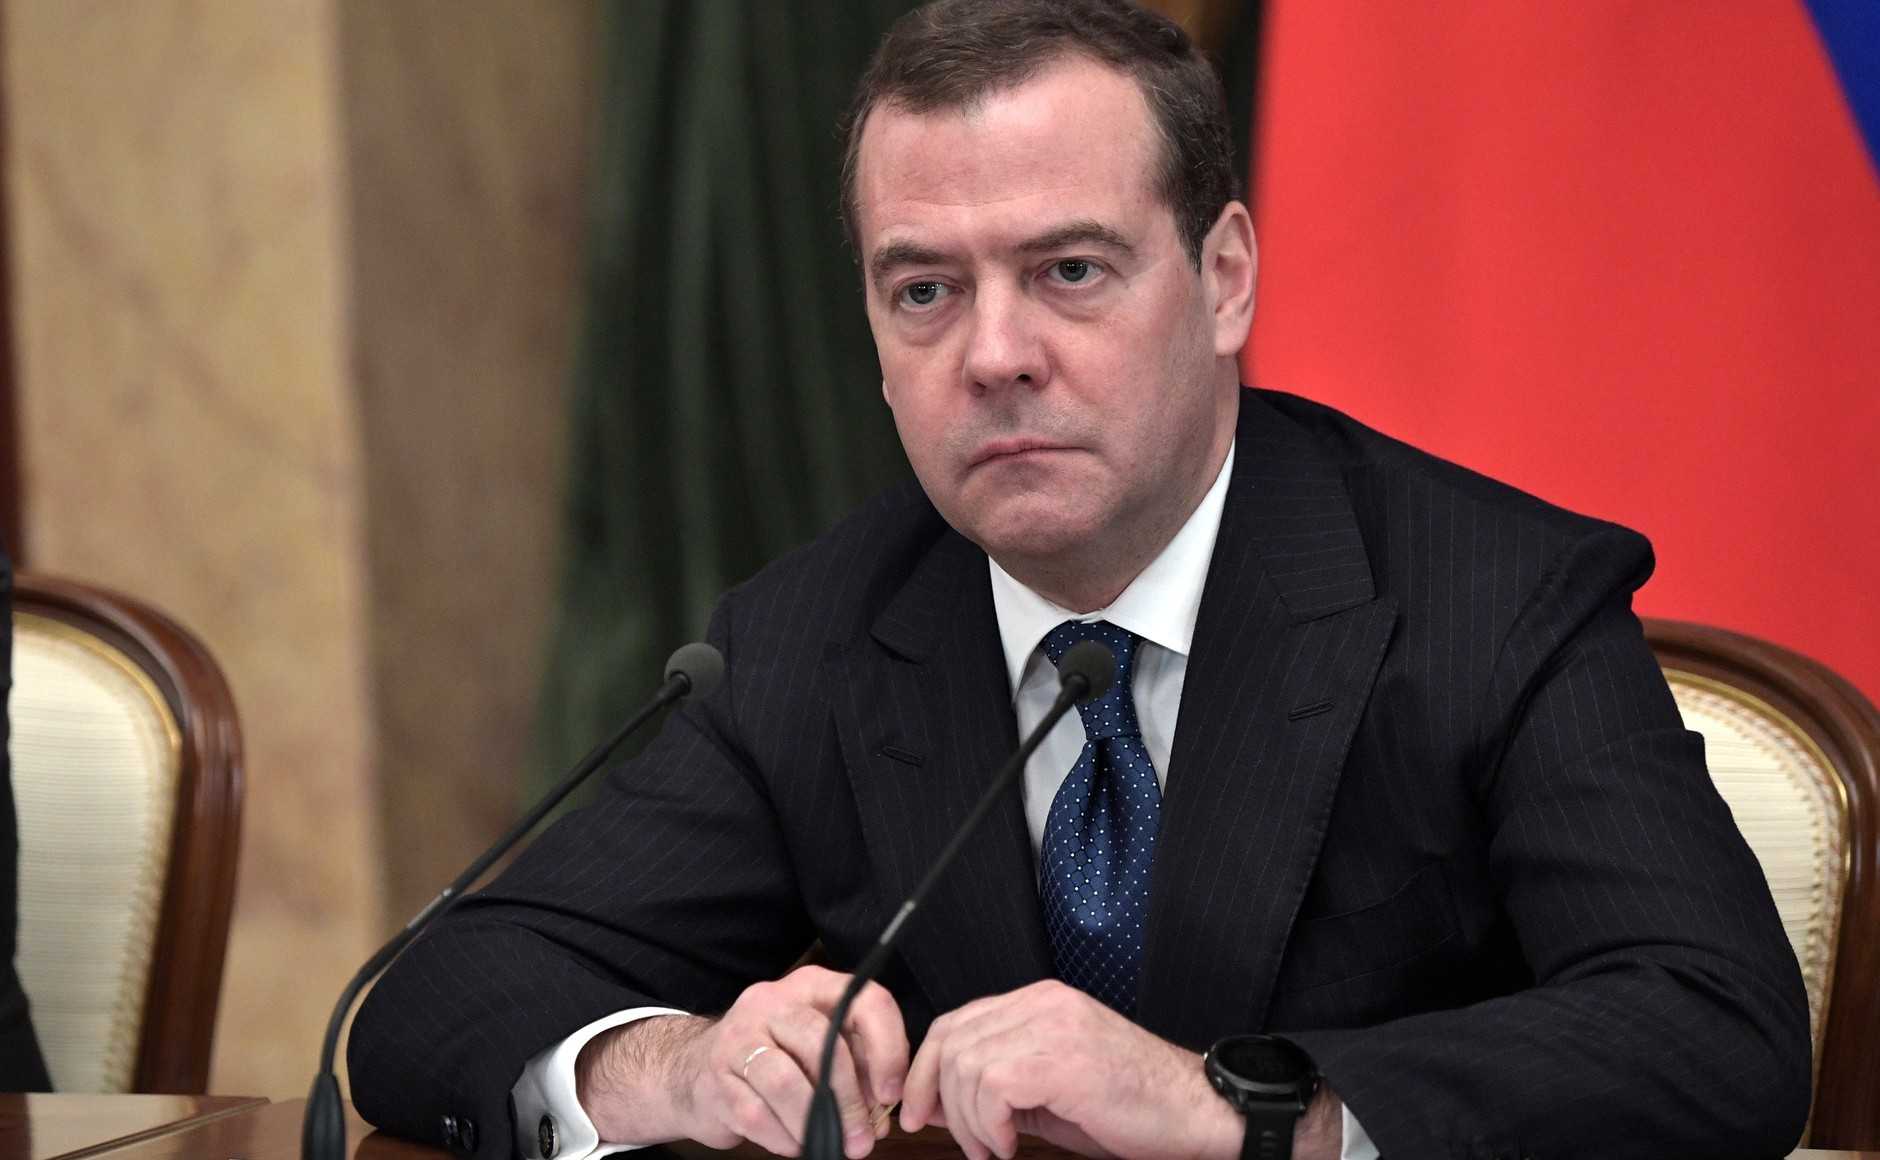 Медведев: "РФ не против вступления Украины в ЕС, была бы честь"